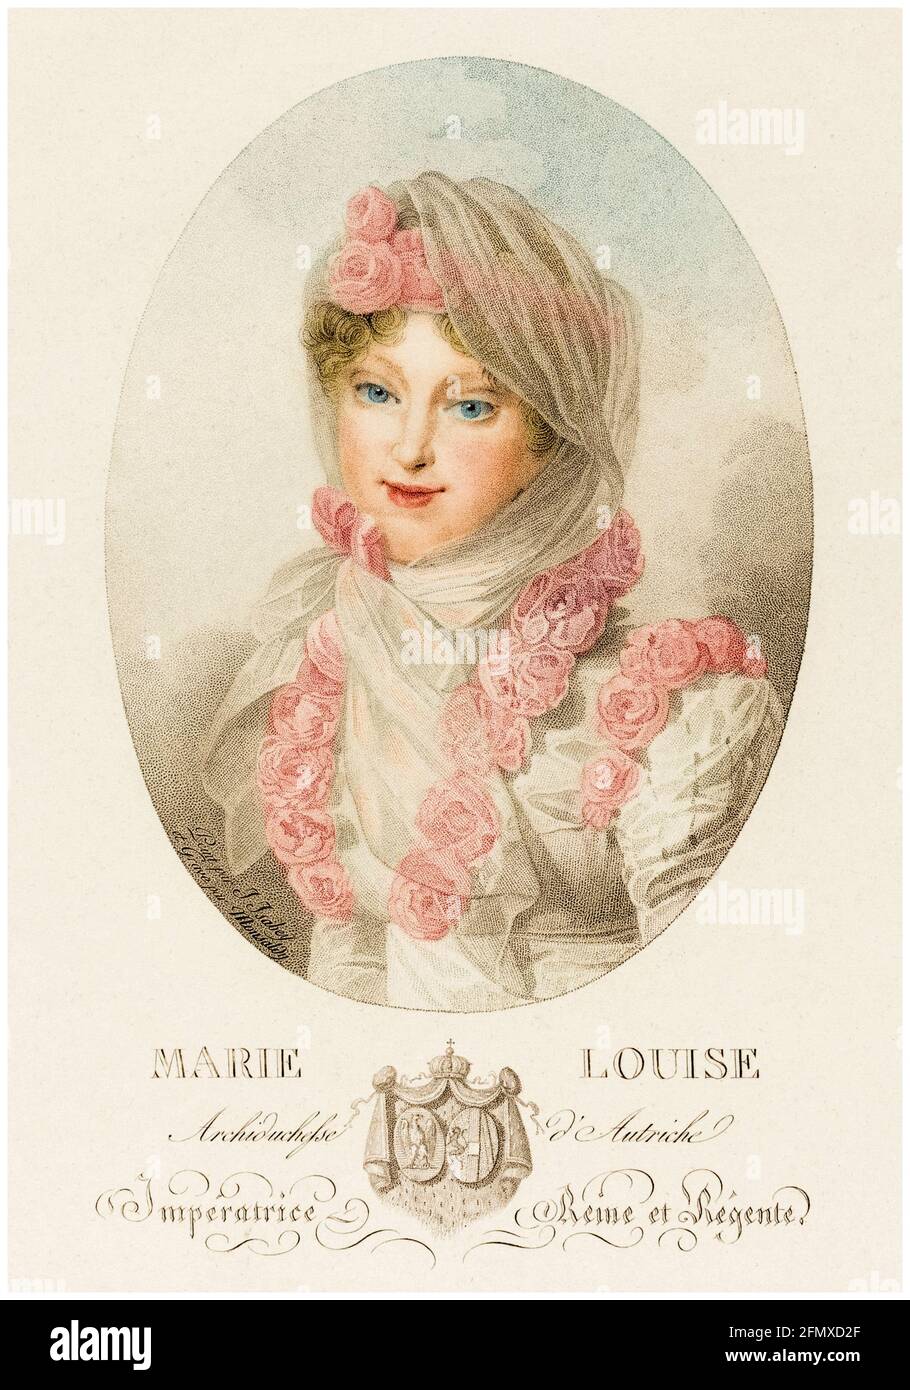 Marie Louise (1791-1847), duchesse de Parme (1814-1847), impératrice des Français (1810-1814), seconde épouse de Napoléon Bonaparte (Napoléon I), portrait gravé par Antoine Maxime Monsaldy après Jean Baptiste Isabey, avant 1816 Banque D'Images